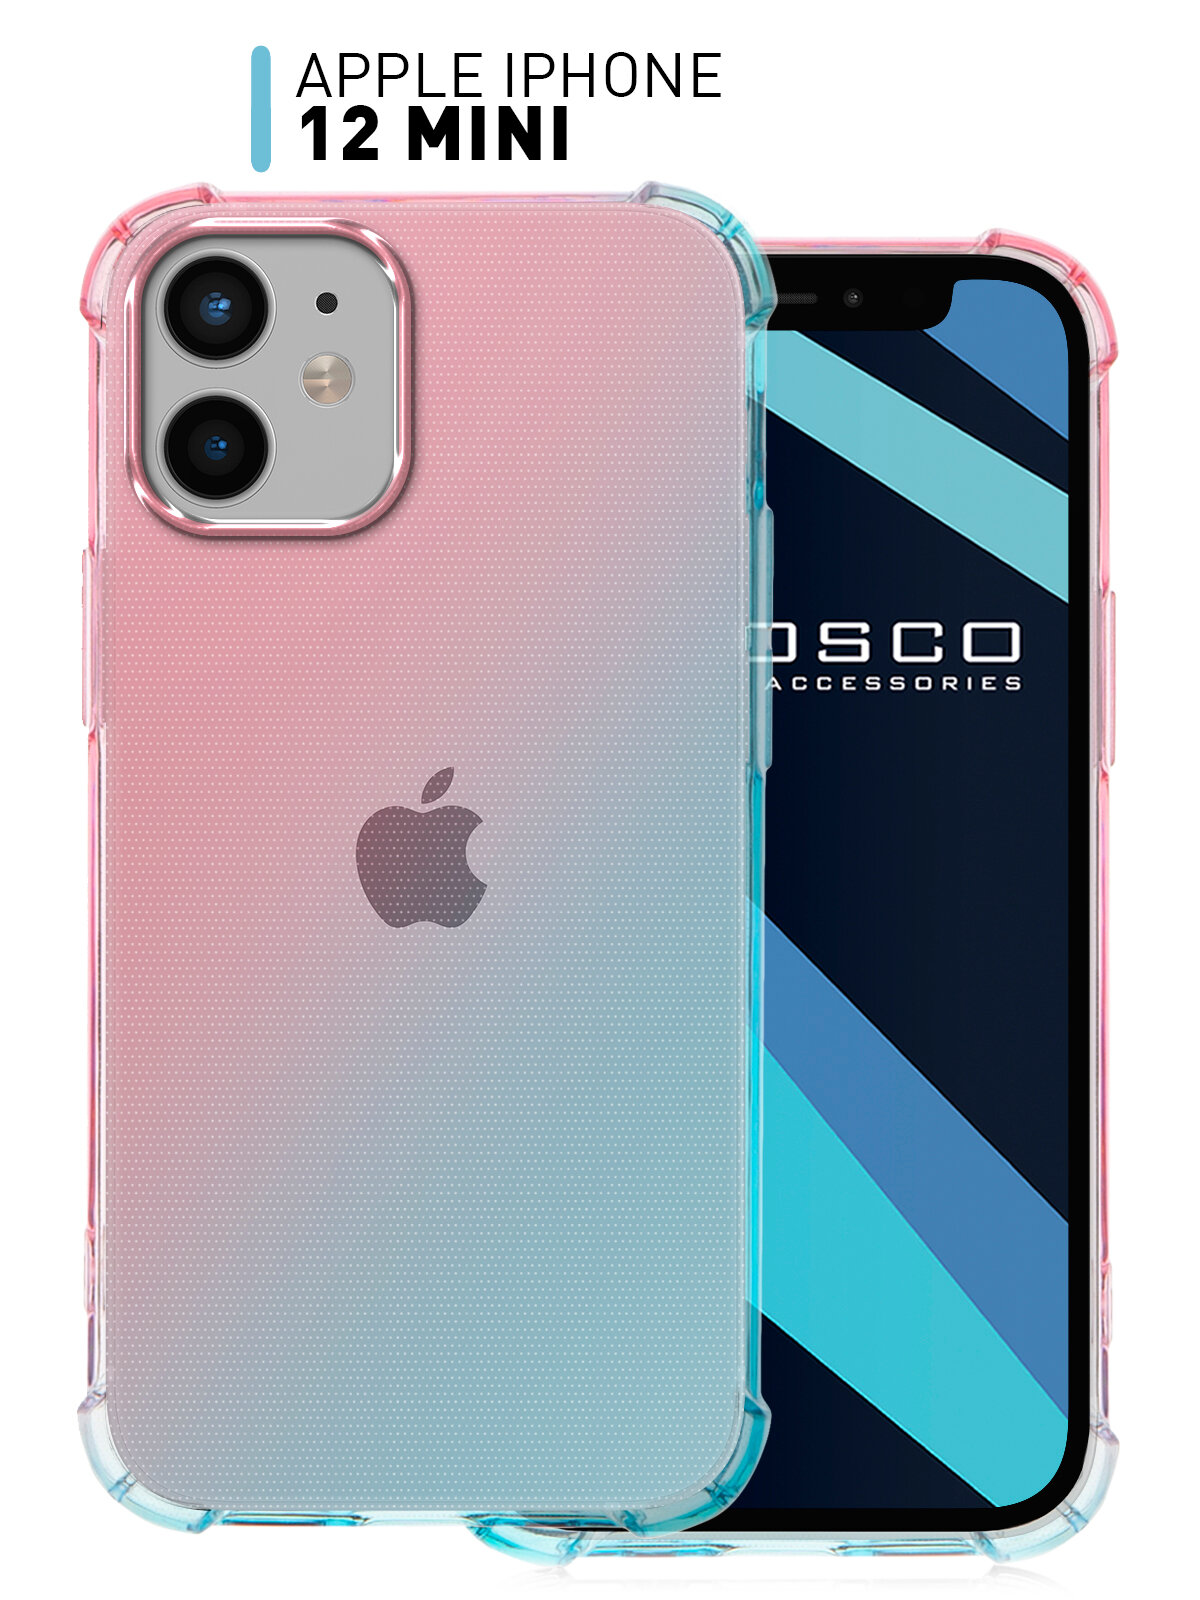 Противоударный чехол для Apple iPhone 12 mini (Эпл Айфон 12 мини) усиленный с бортиком (защитой) камер, прозрачный силиконовый розово-голубой ROSCO